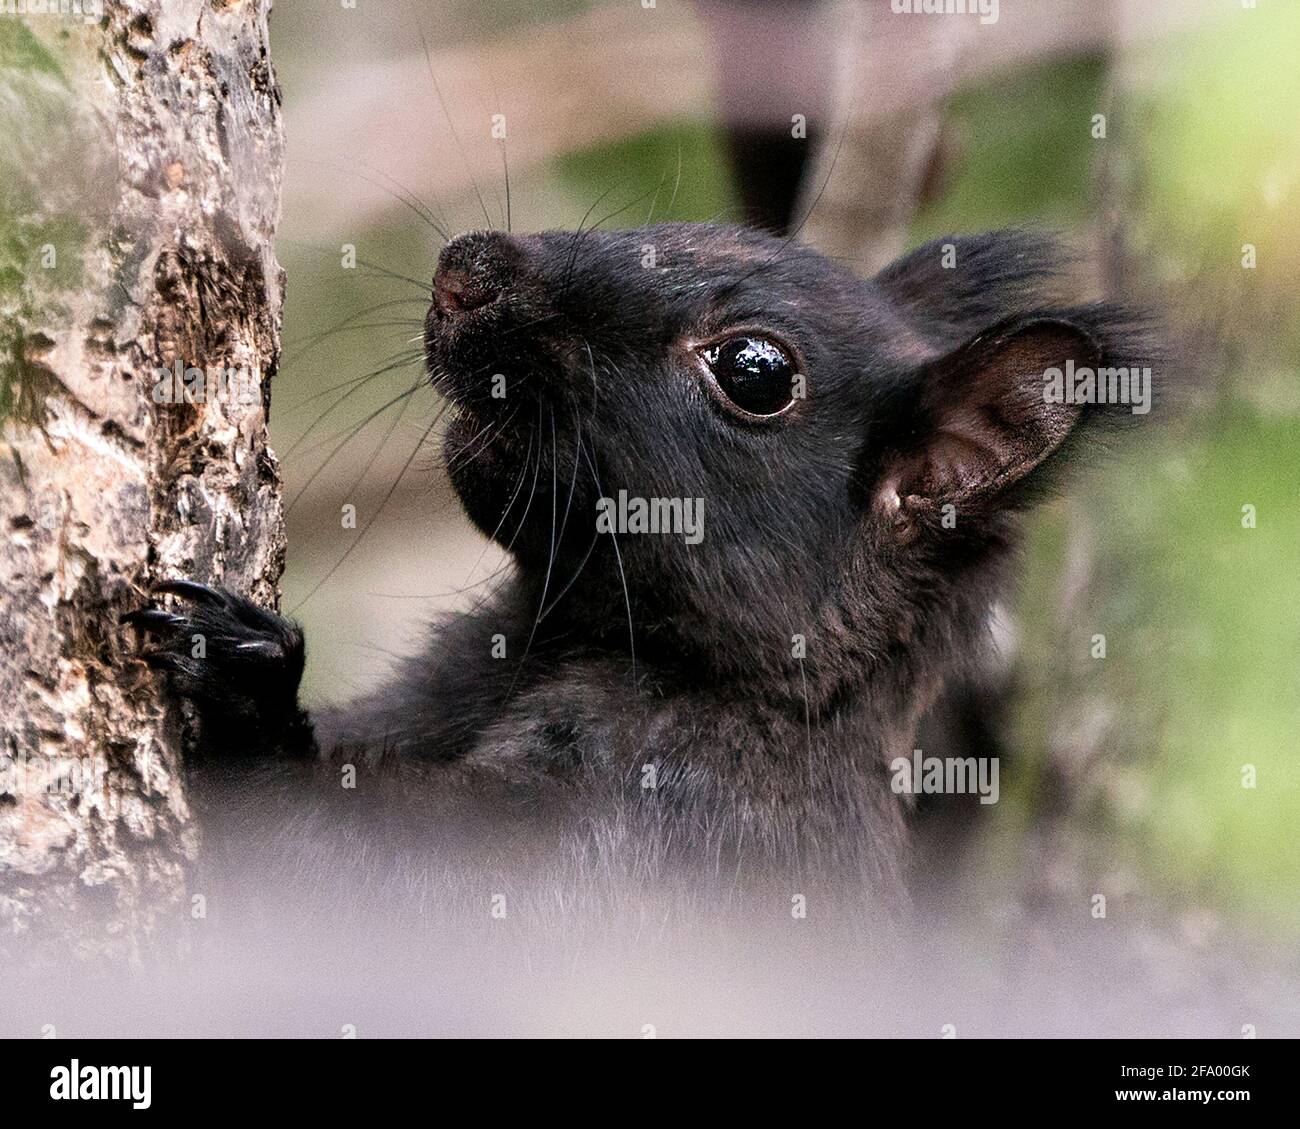 Eichhörnchen Kopf Nahaufnahme Seitenansicht, Klettern einen Baum mit einem verschwommenen Hintergrund in seiner Umgebung und zeigt schwarzes Fell, schwarzes Auge, Ohren, Pfoten. Stockfoto